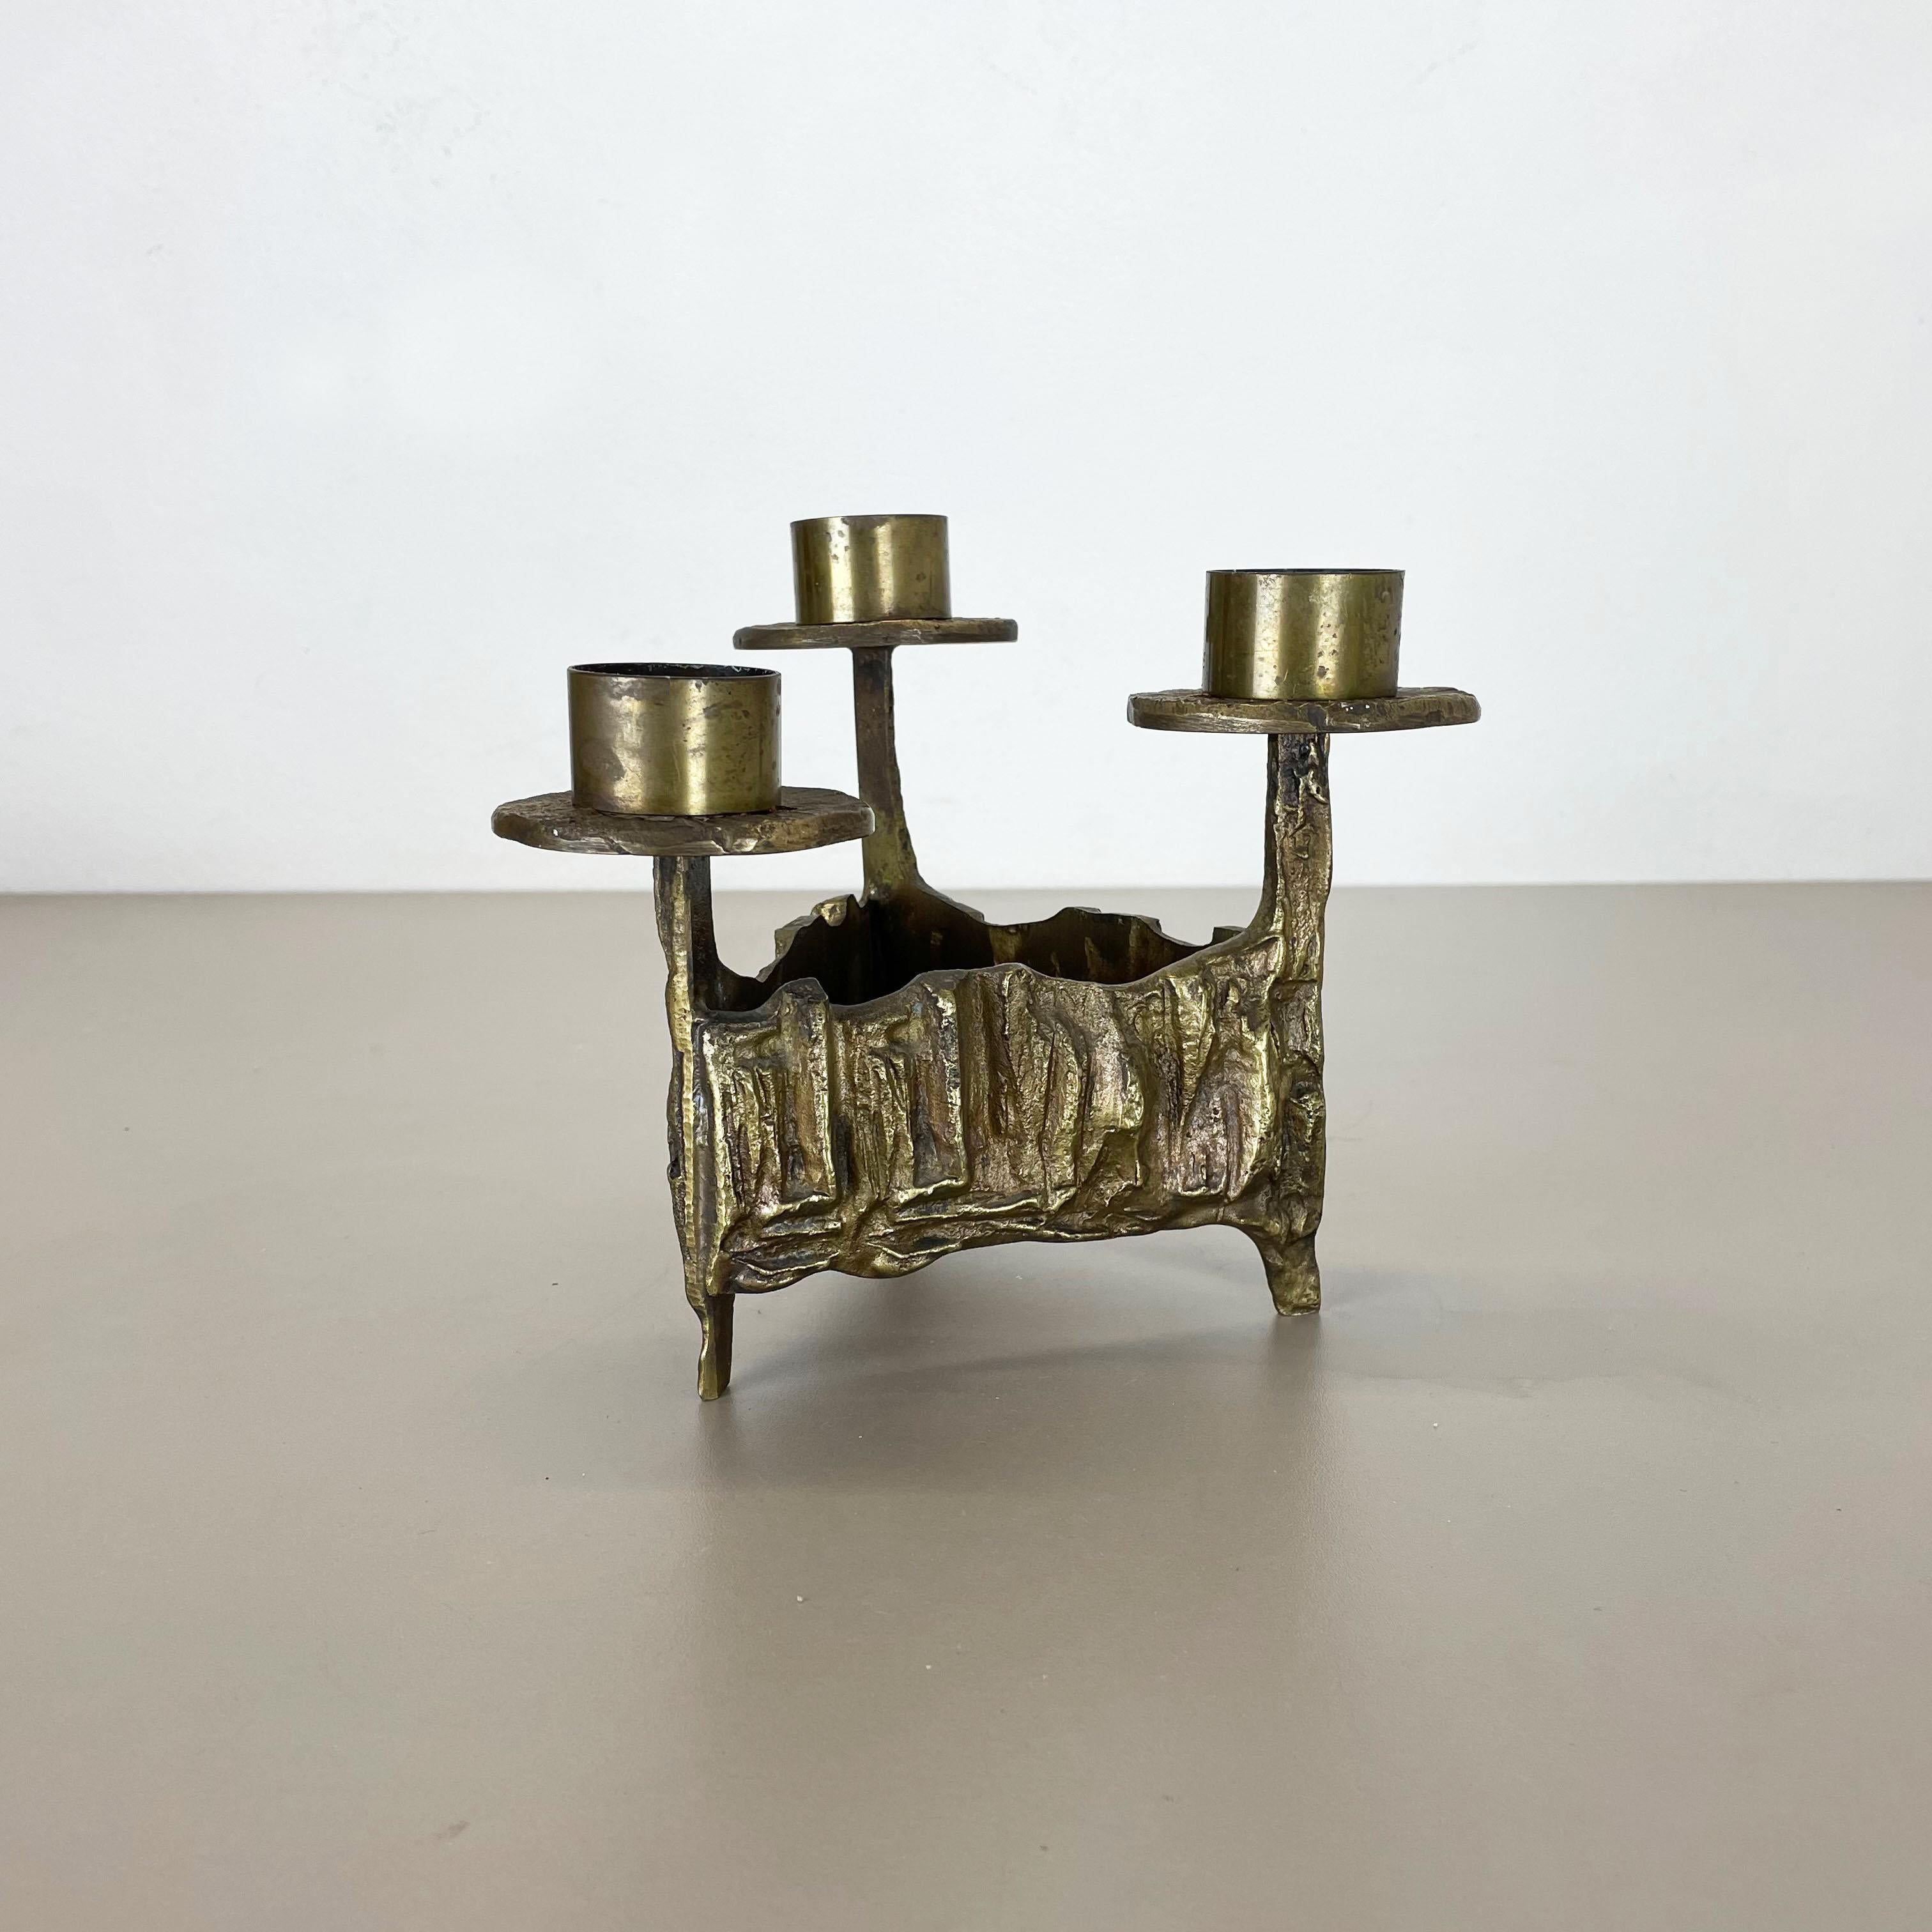 Modernist Vintage Sculptural Brutalist Brass Metal Candleholder, France, 1970s For Sale 8